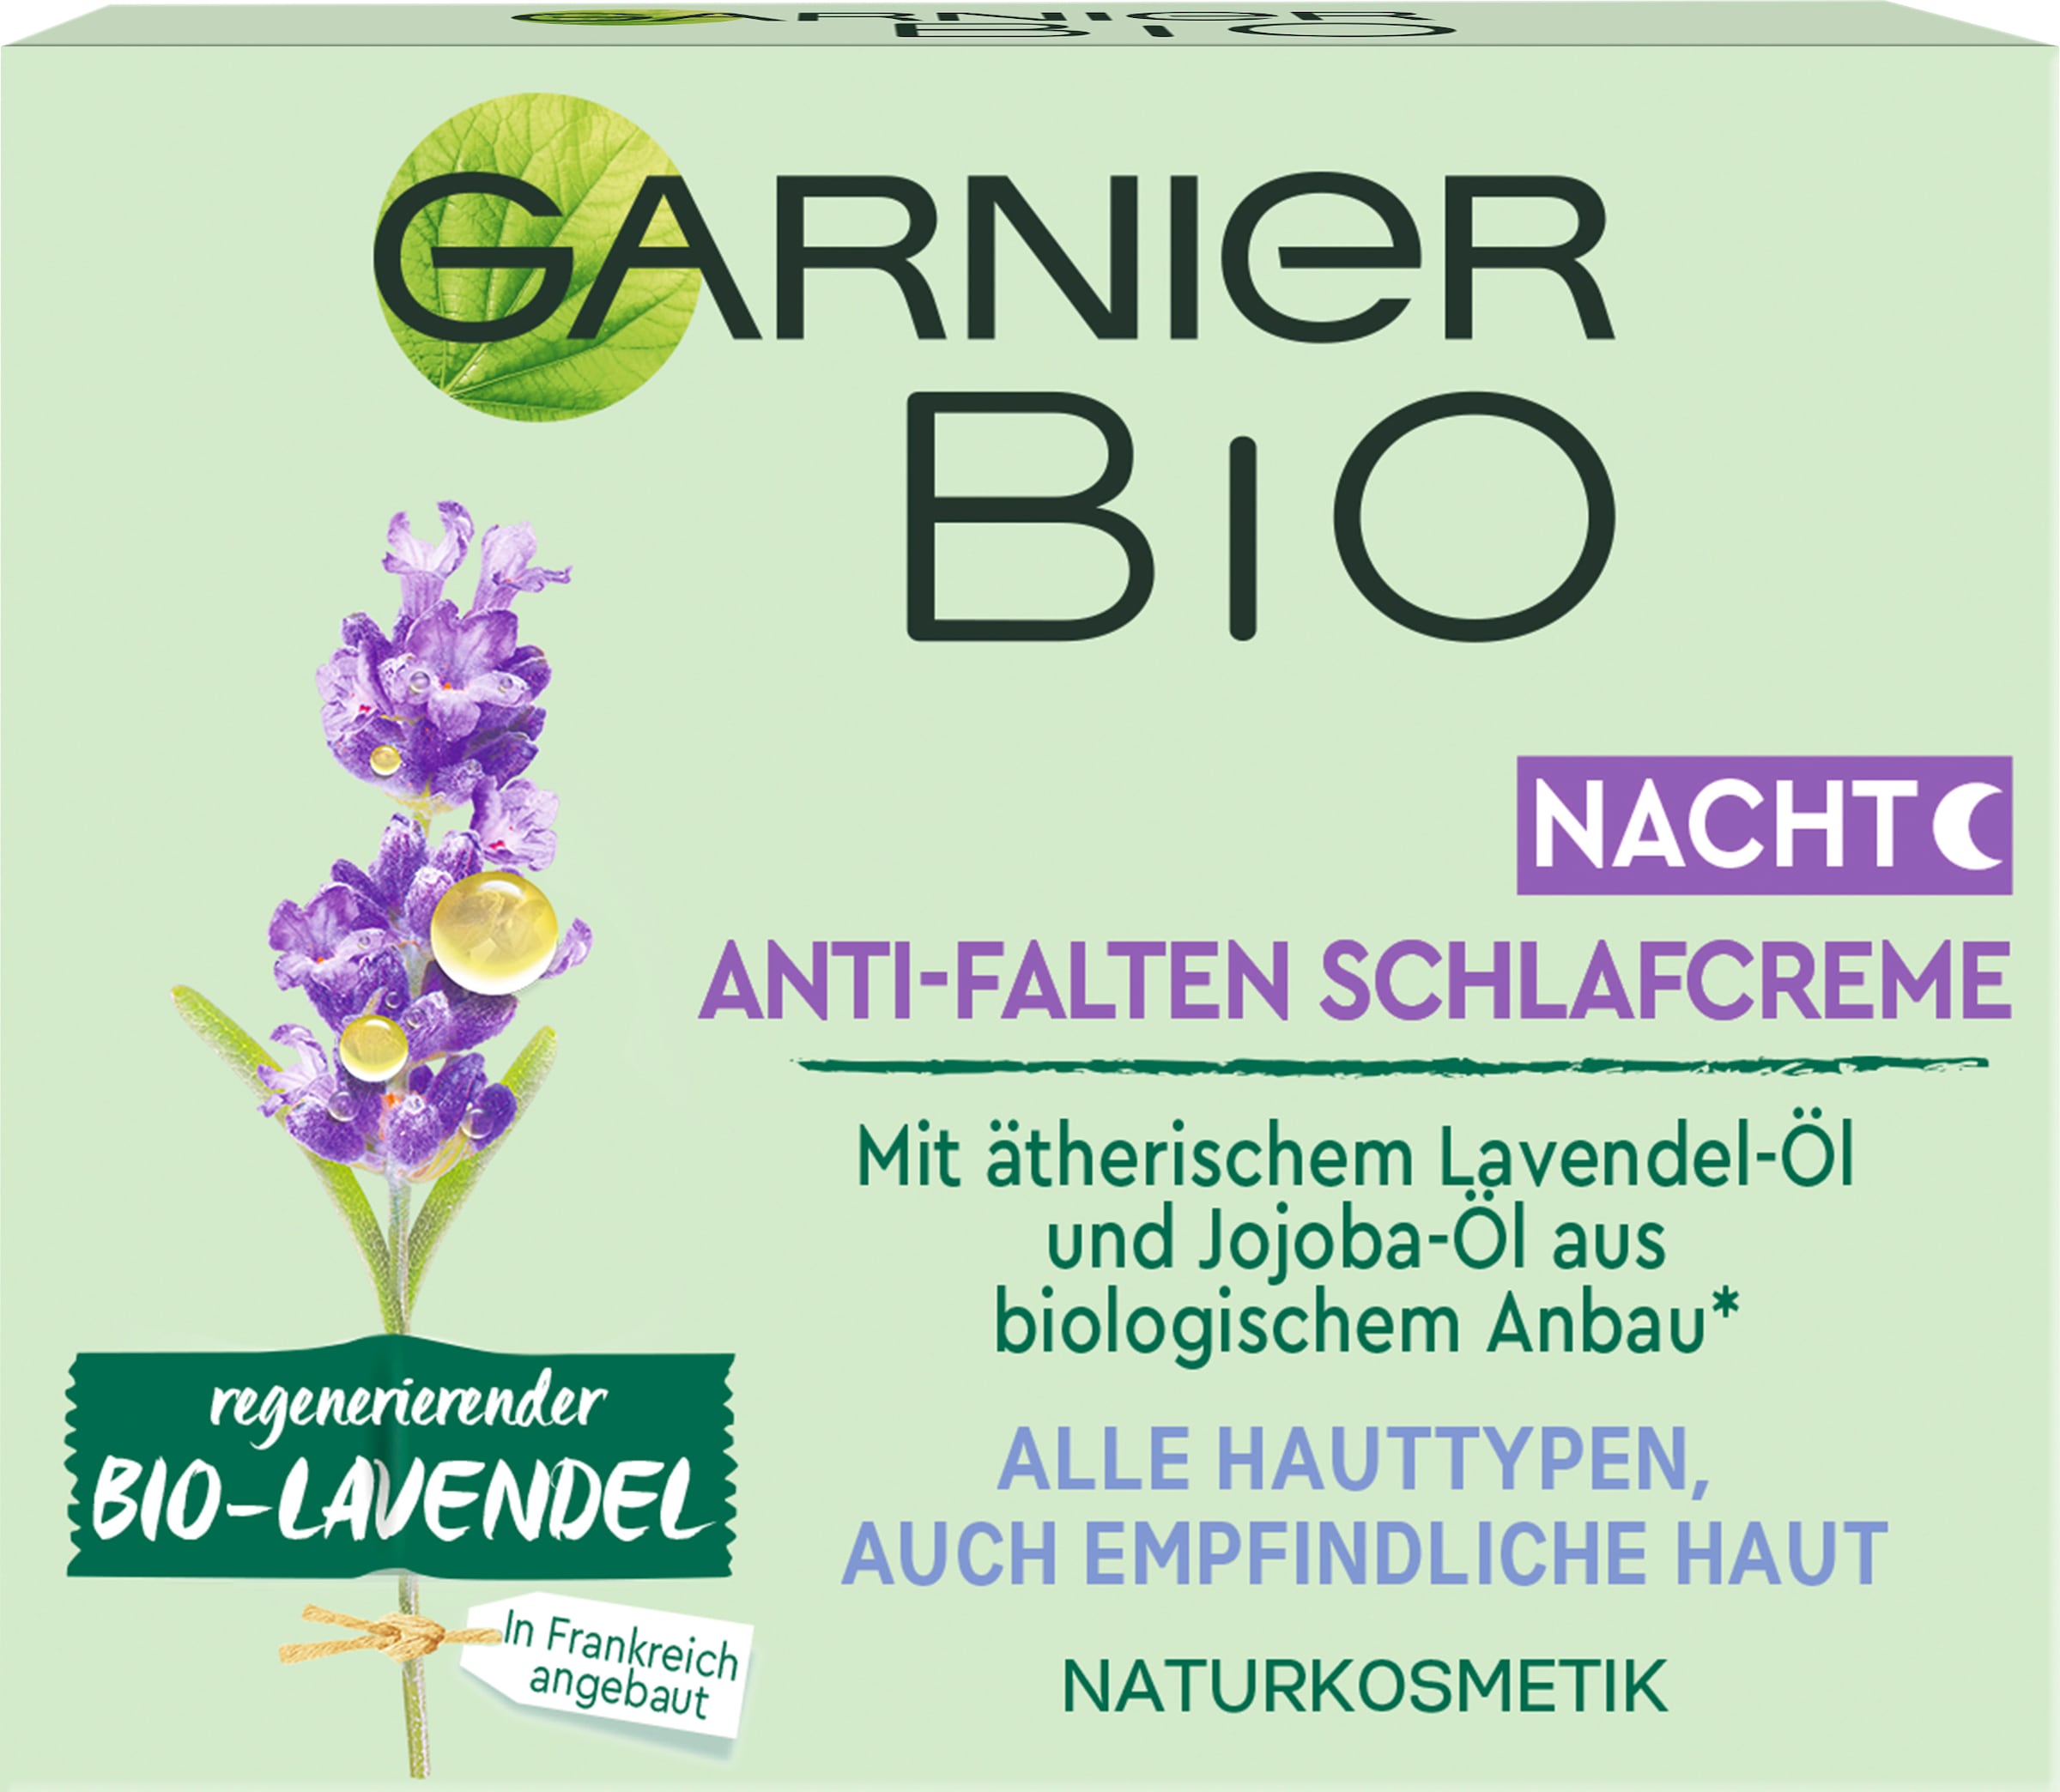 GARNIER bei Anti-Falten online Nachtcreme OTTO »regenerierender Bio-Lavendel Schlafcreme«